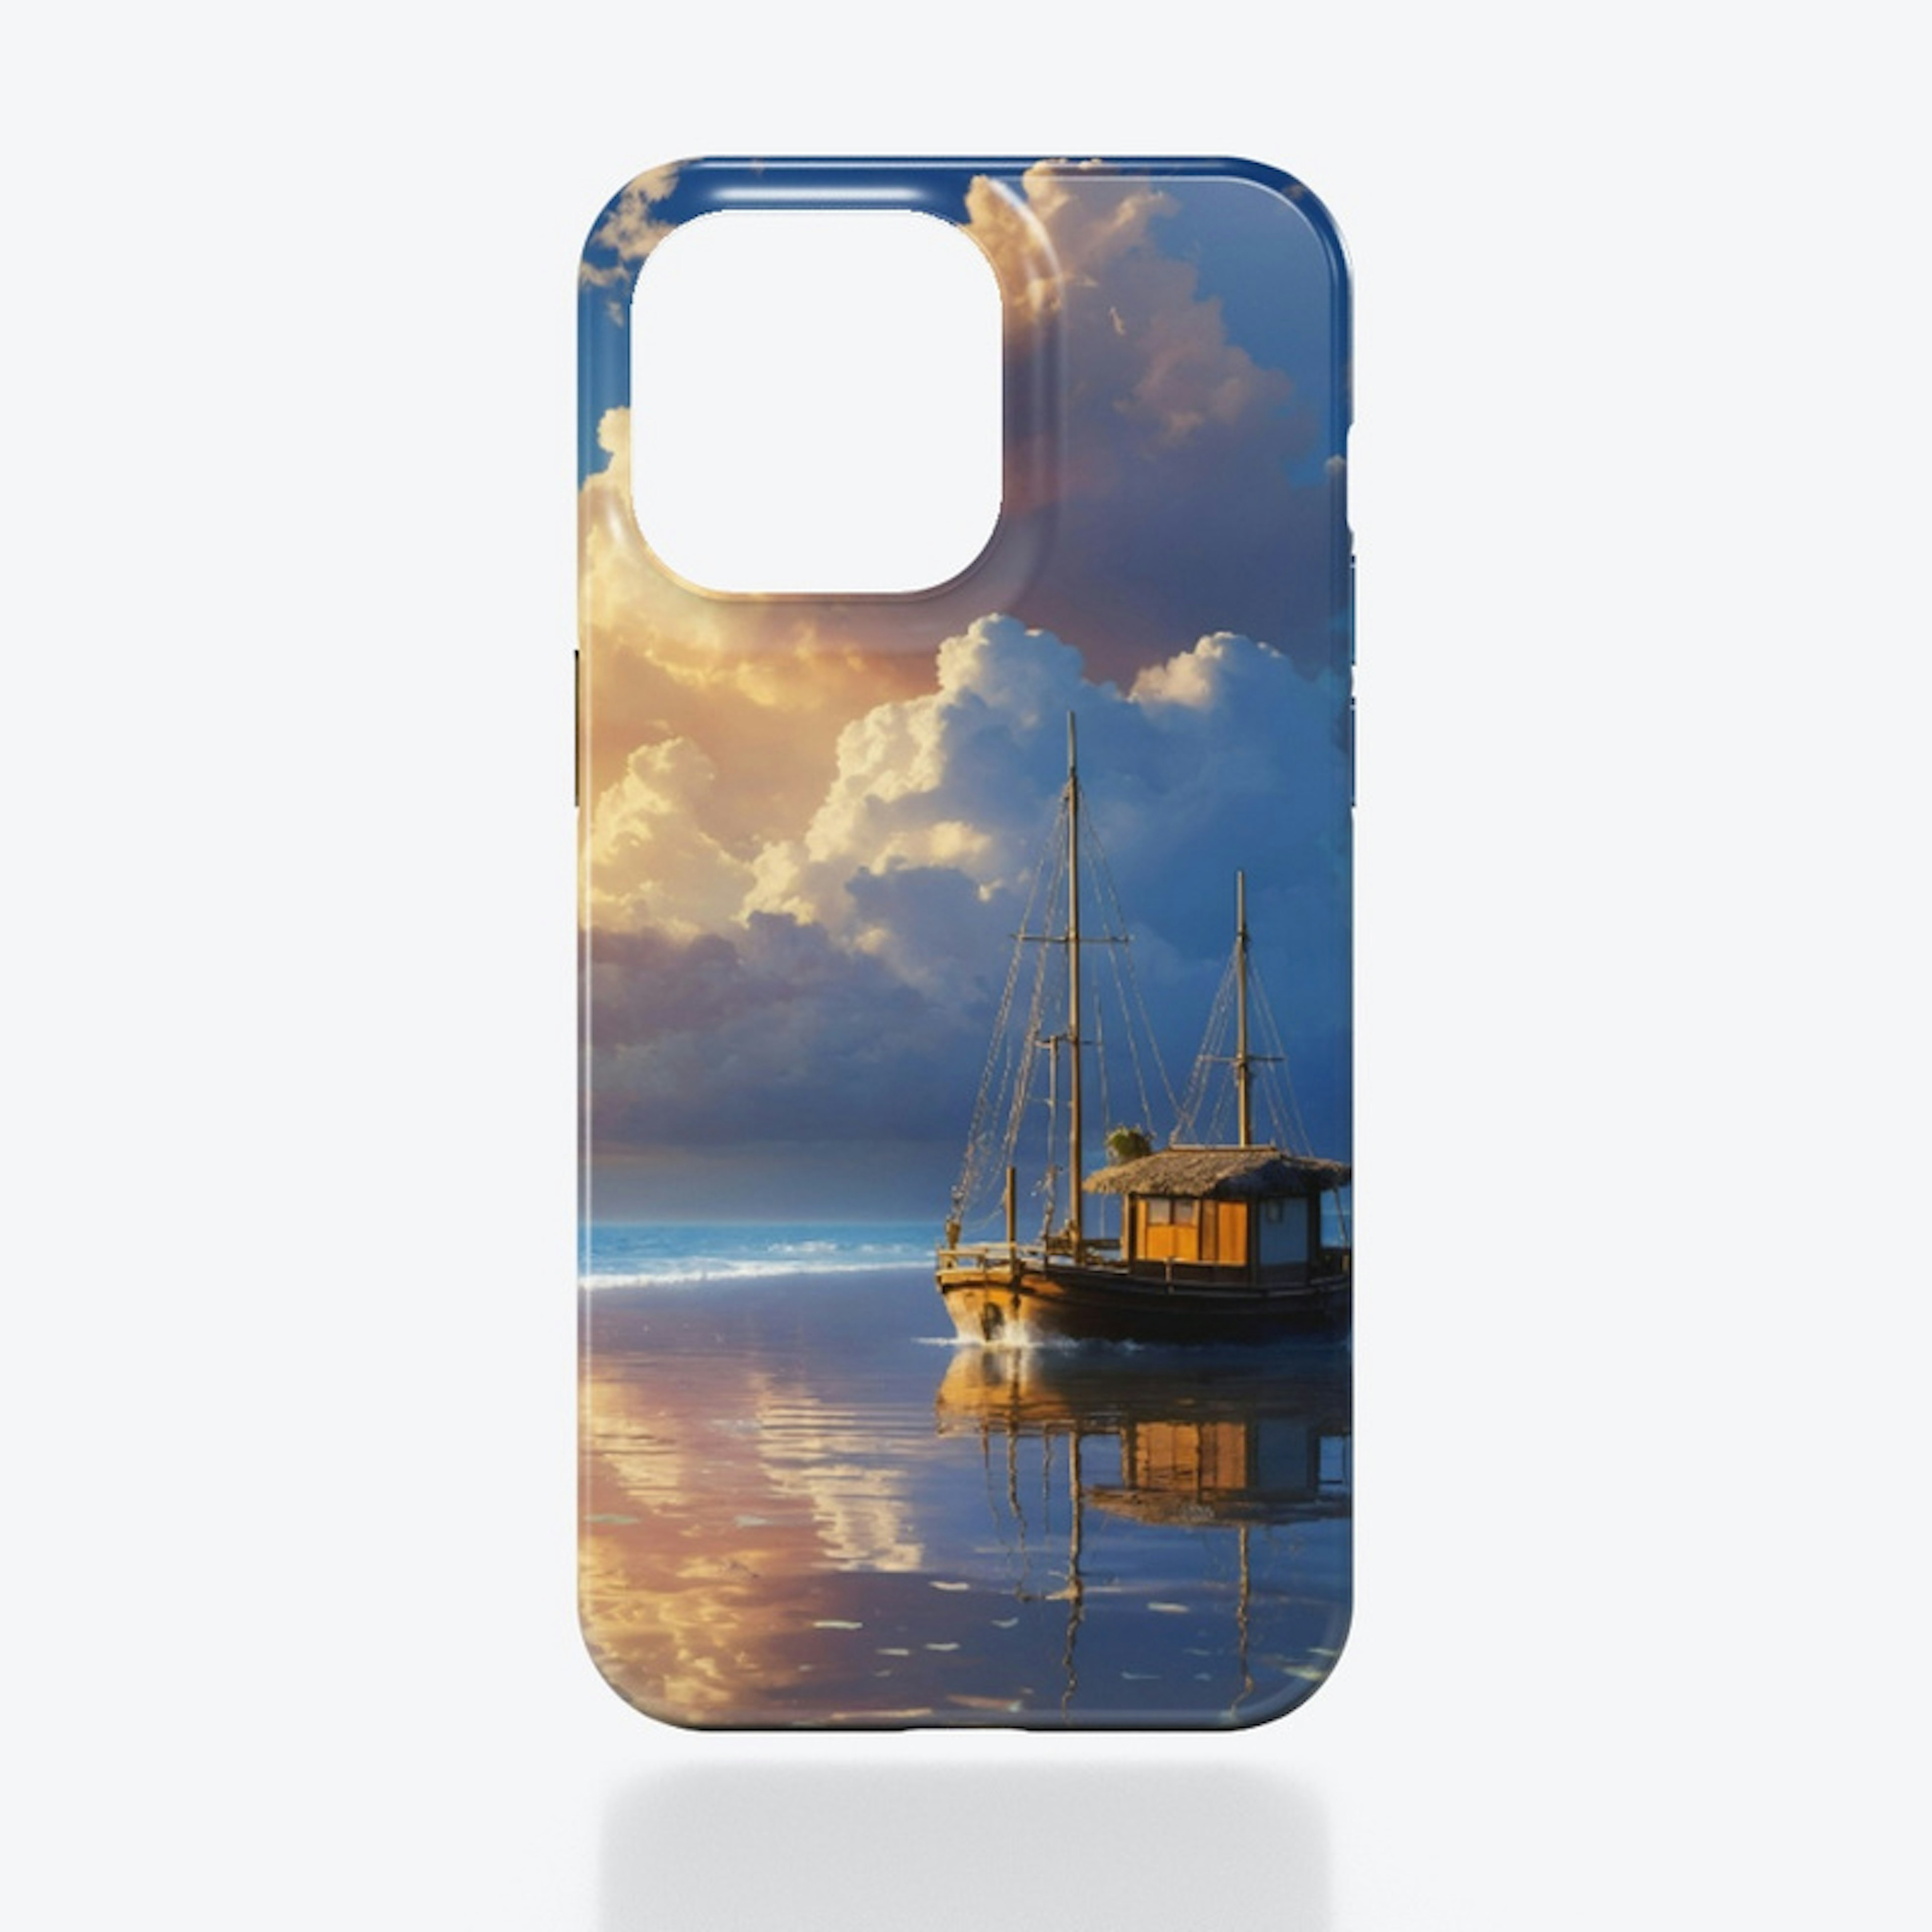 Blue shore iPhone case